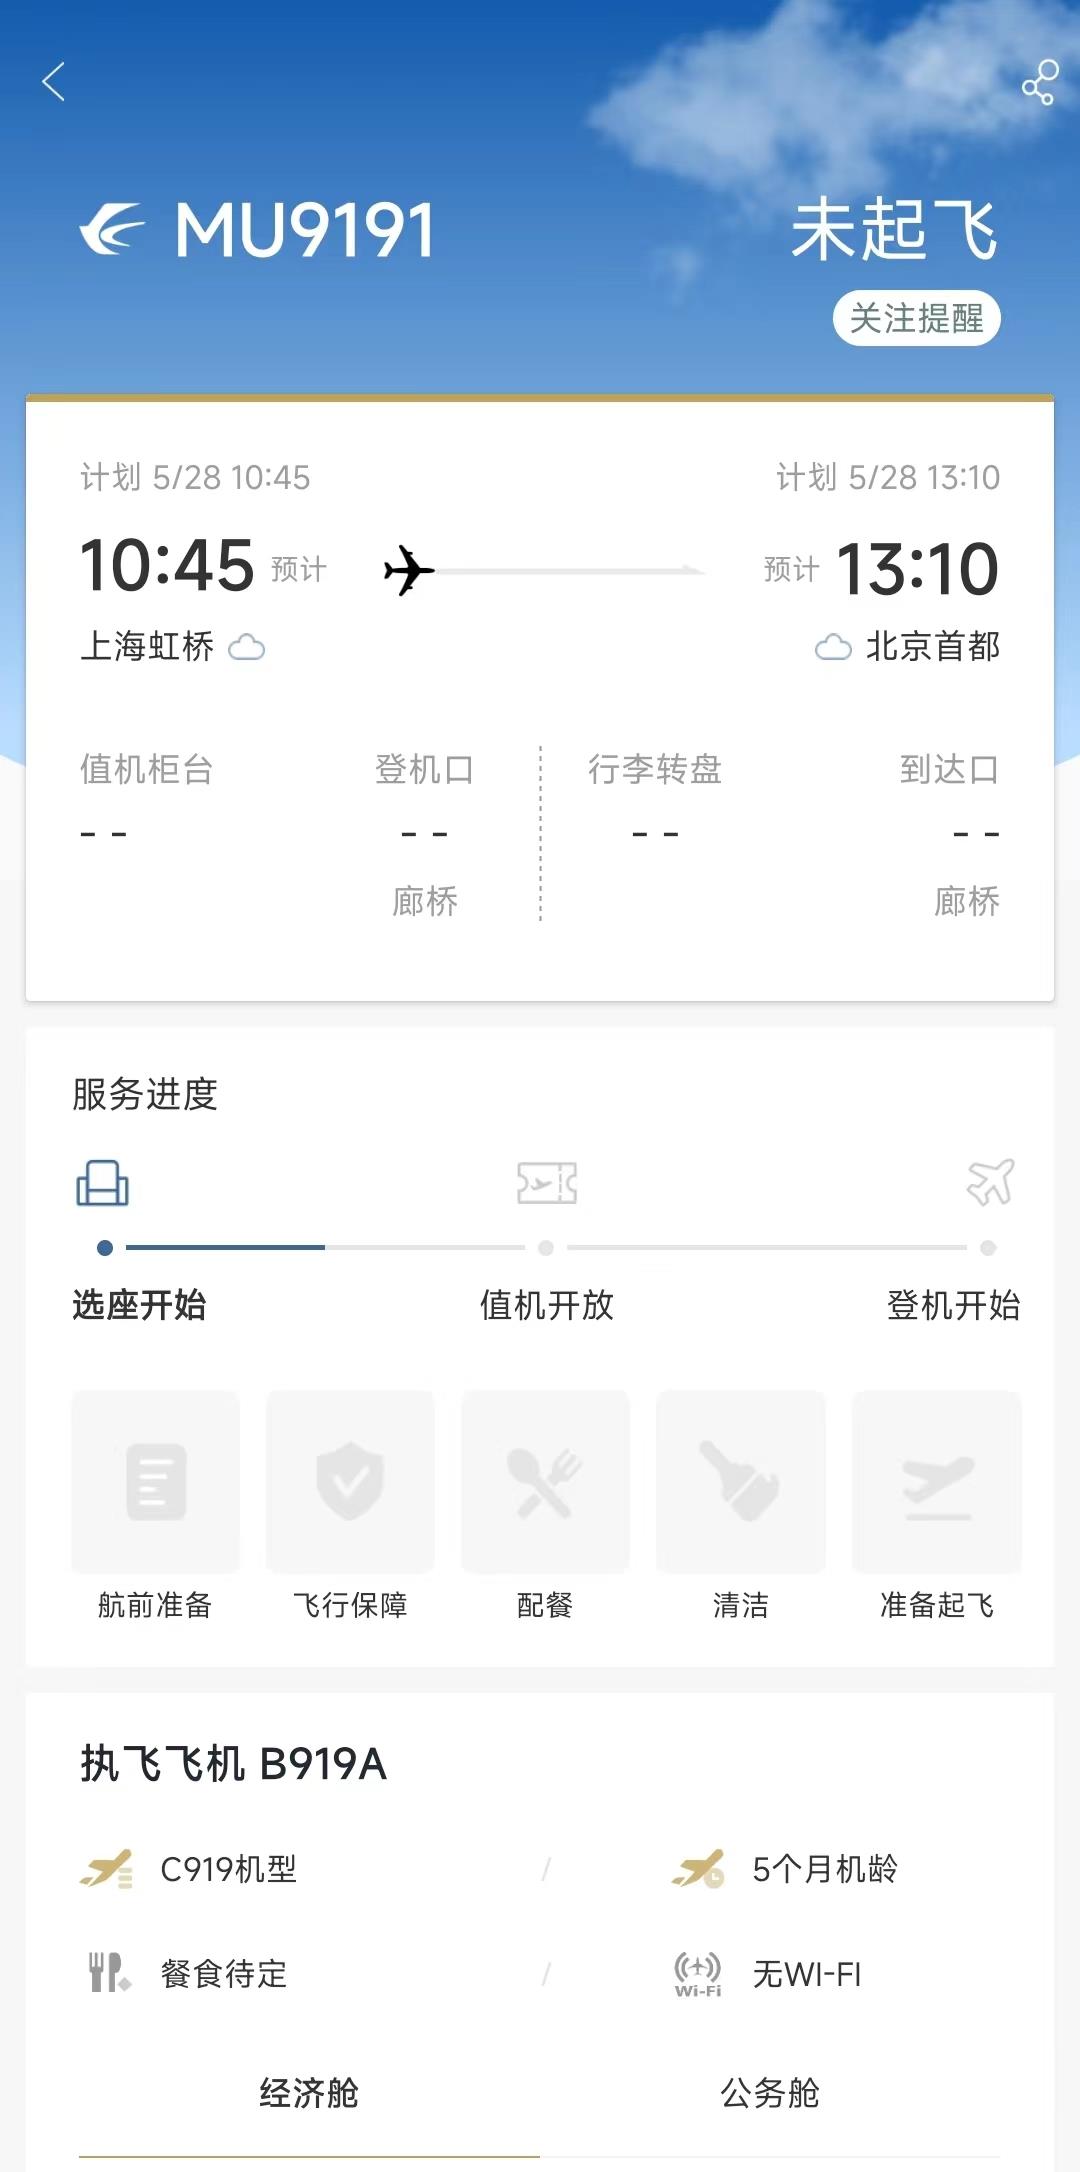 即将首航！国产大飞机C919周日上海飞北京